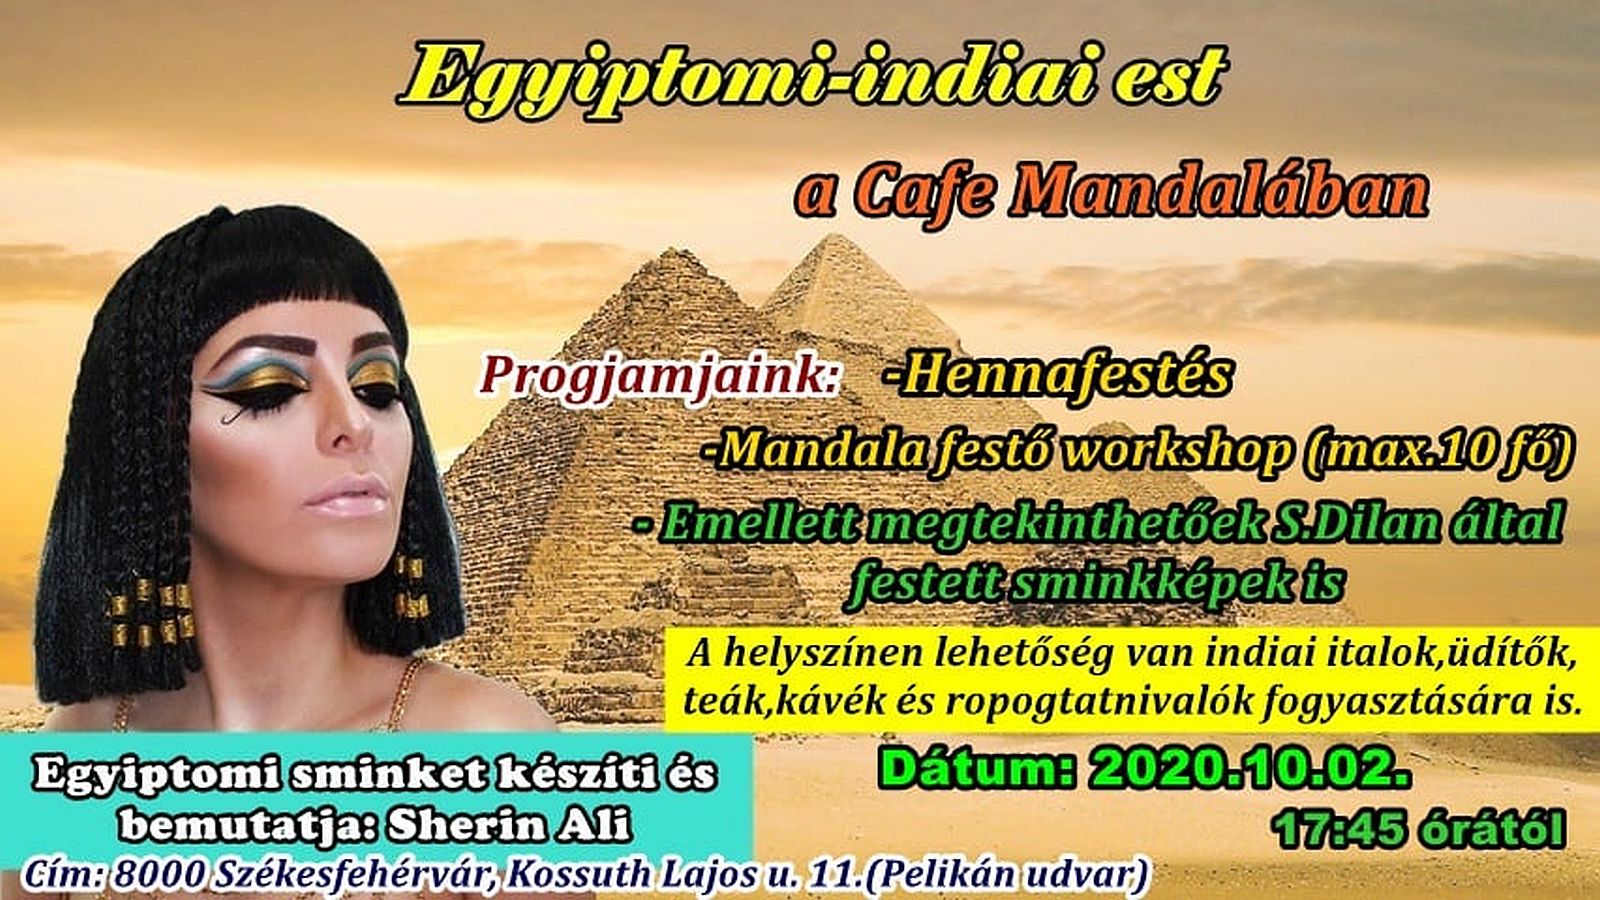 Smink, rajzok, színezők - egyiptomi-indiai est lesz a Cafe Mandalában pénteken